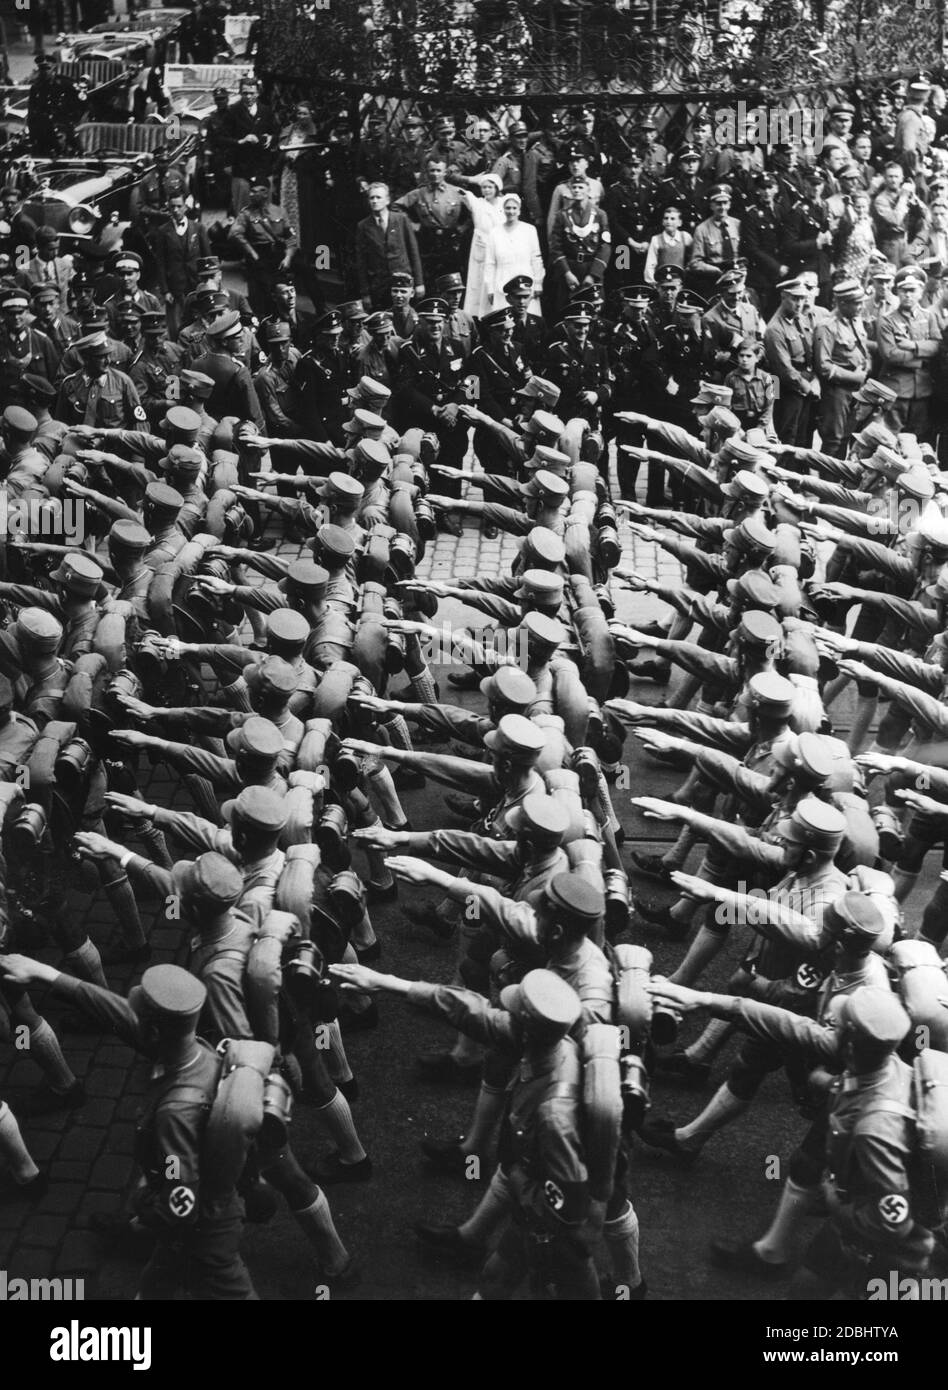 SA-Einheiten marschieren während des NSDAP-Kongresses durch Nürnberg. Sie werden von der Bevölkerung und von SS-Führern beobachtet, die in der Mitte lächeln. Links im Hintergrund sind mehrere Mercedes-Autos zu sehen. Stockfoto